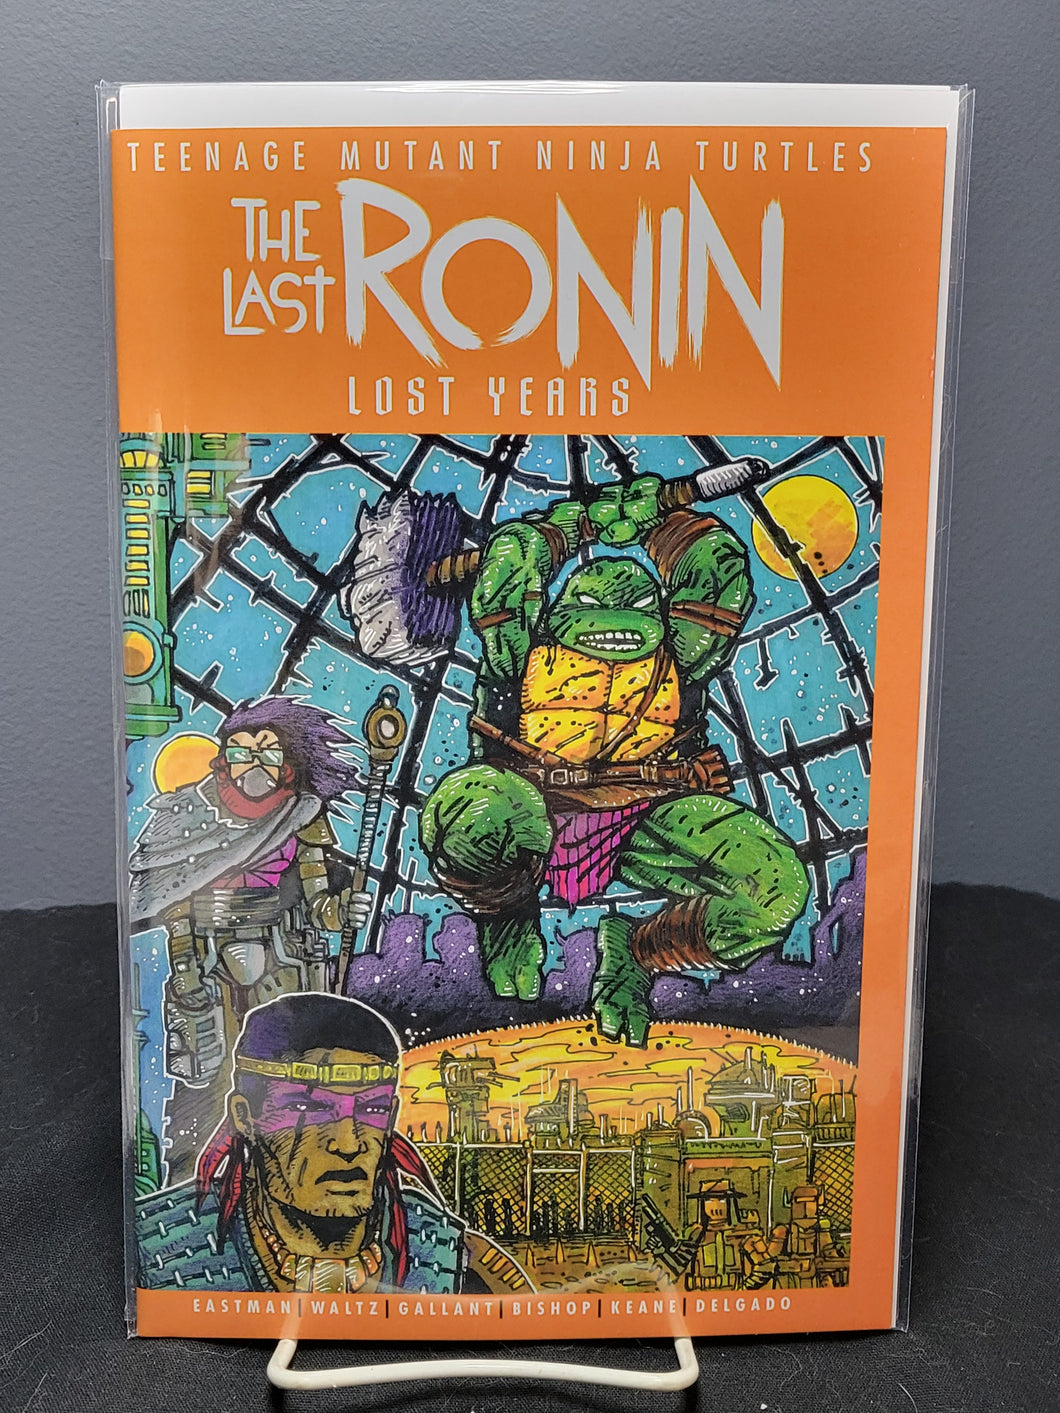 Teenage Mutant Ninja Turtles The Last Ronin Lost Years #4 Variant